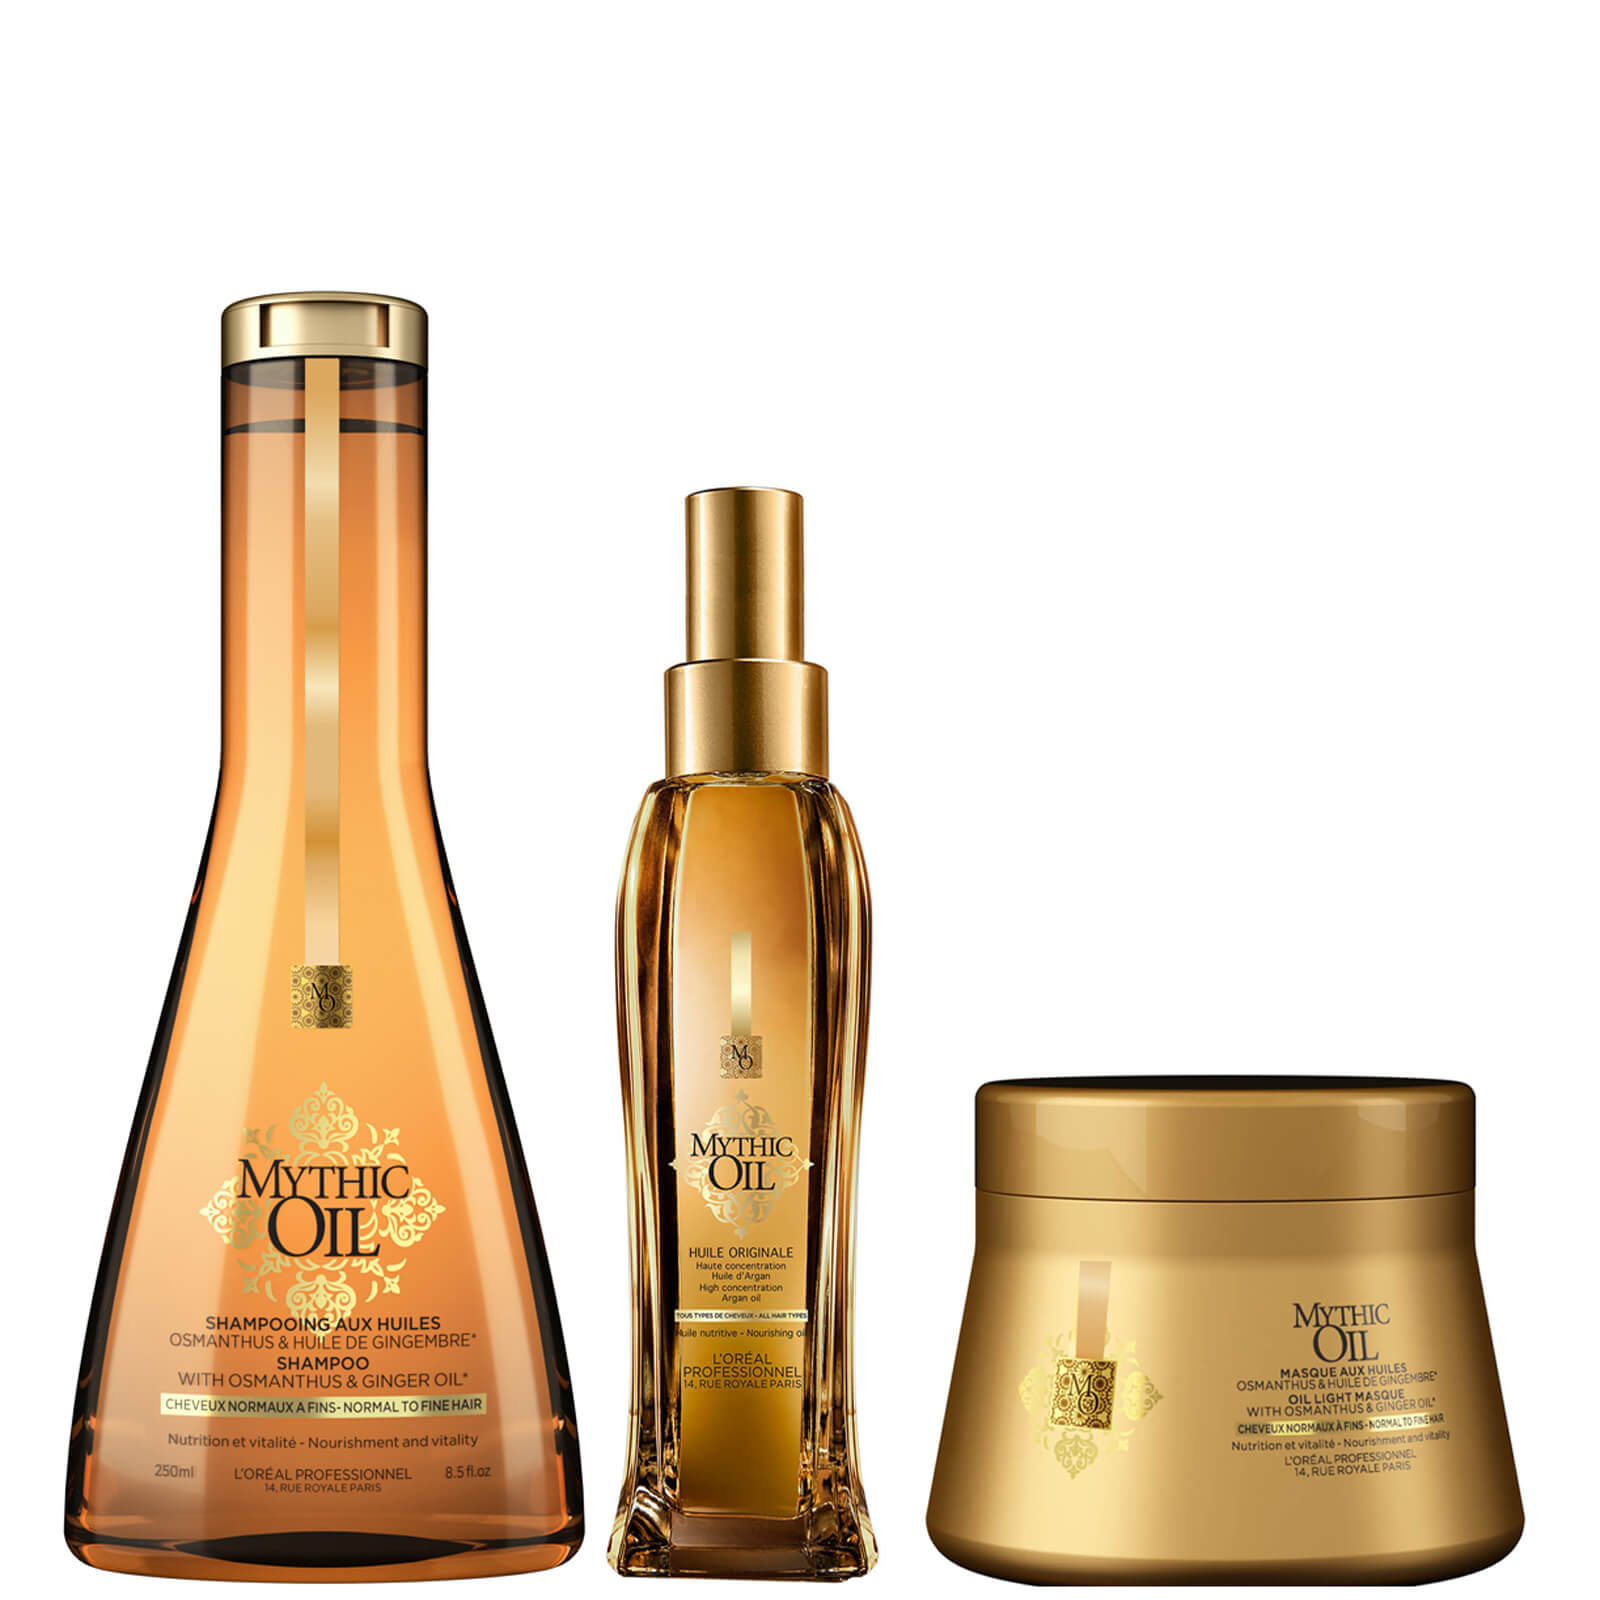 Trío de champú, mascarilla y aceite para cabellos normales/finos Mythic Oil de L'Oréal Professionnel